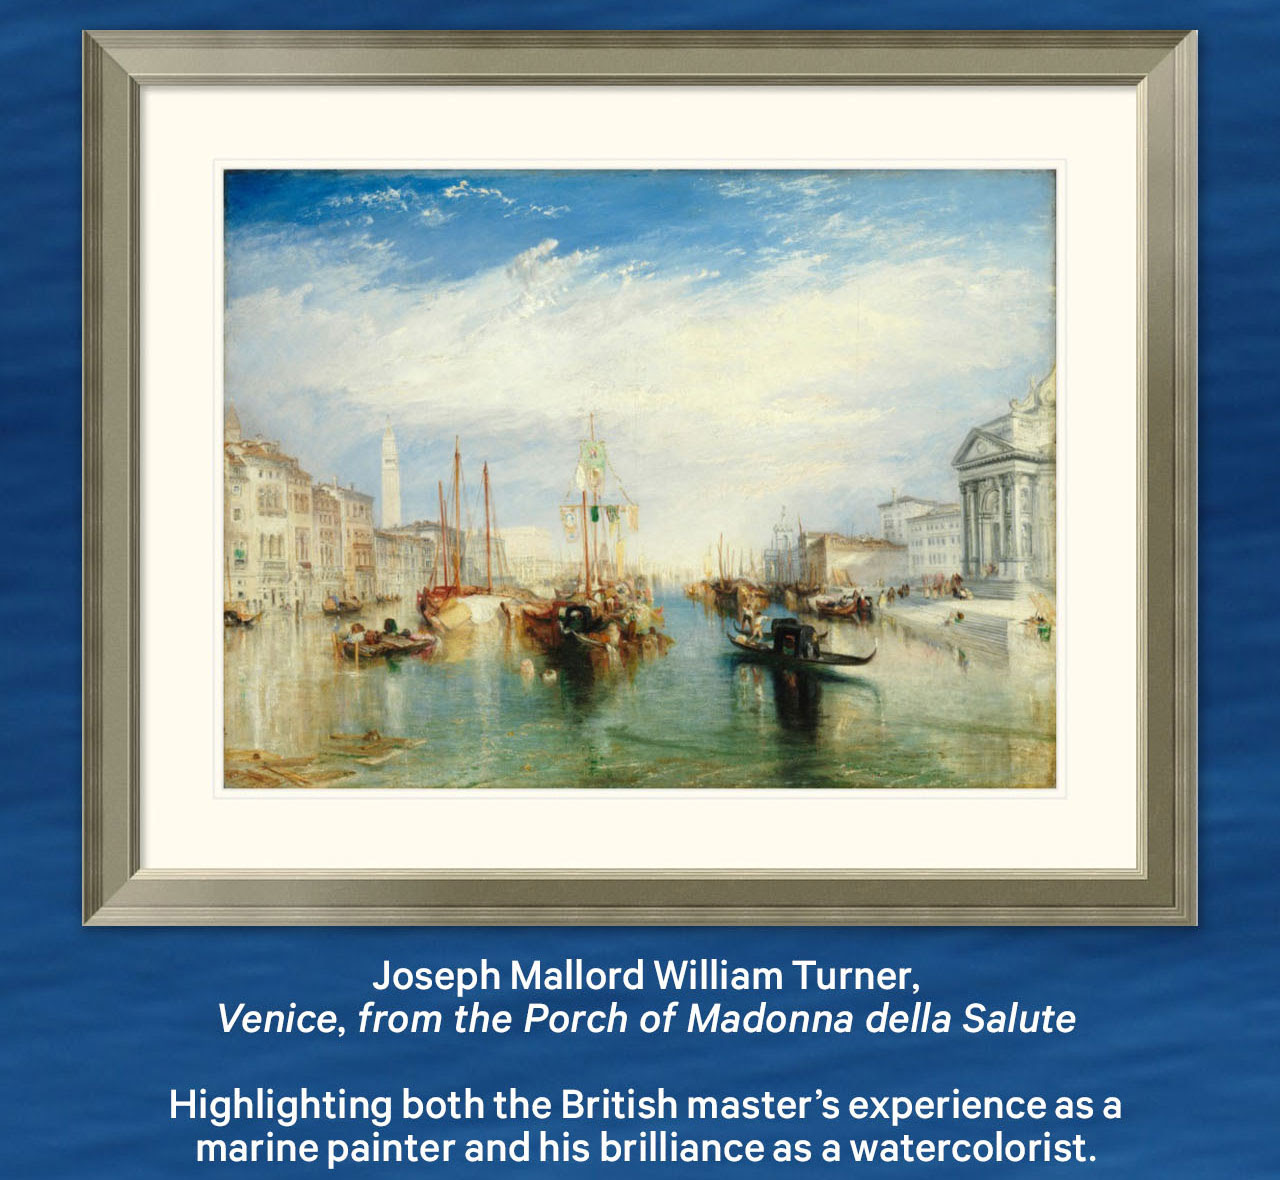 Joseph Mallord William Turner, Veneza, do Pórtico de Madonna della Salute | Destacando a experiência do mestre britânico como pintor marinho e seu brilhantismo como aquarelista.